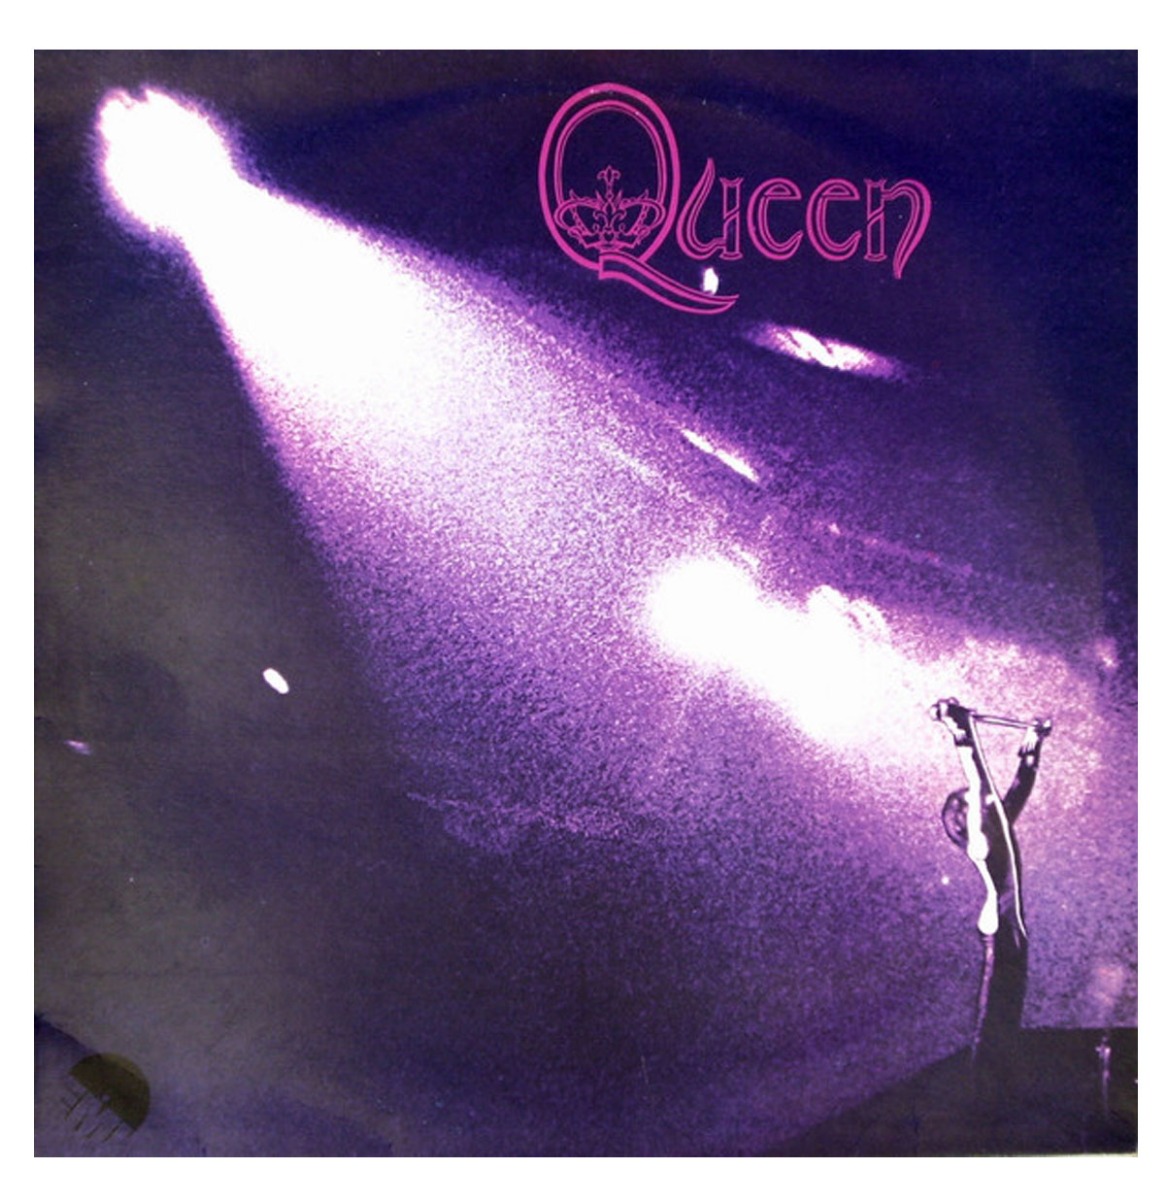 Queen - Queen LP